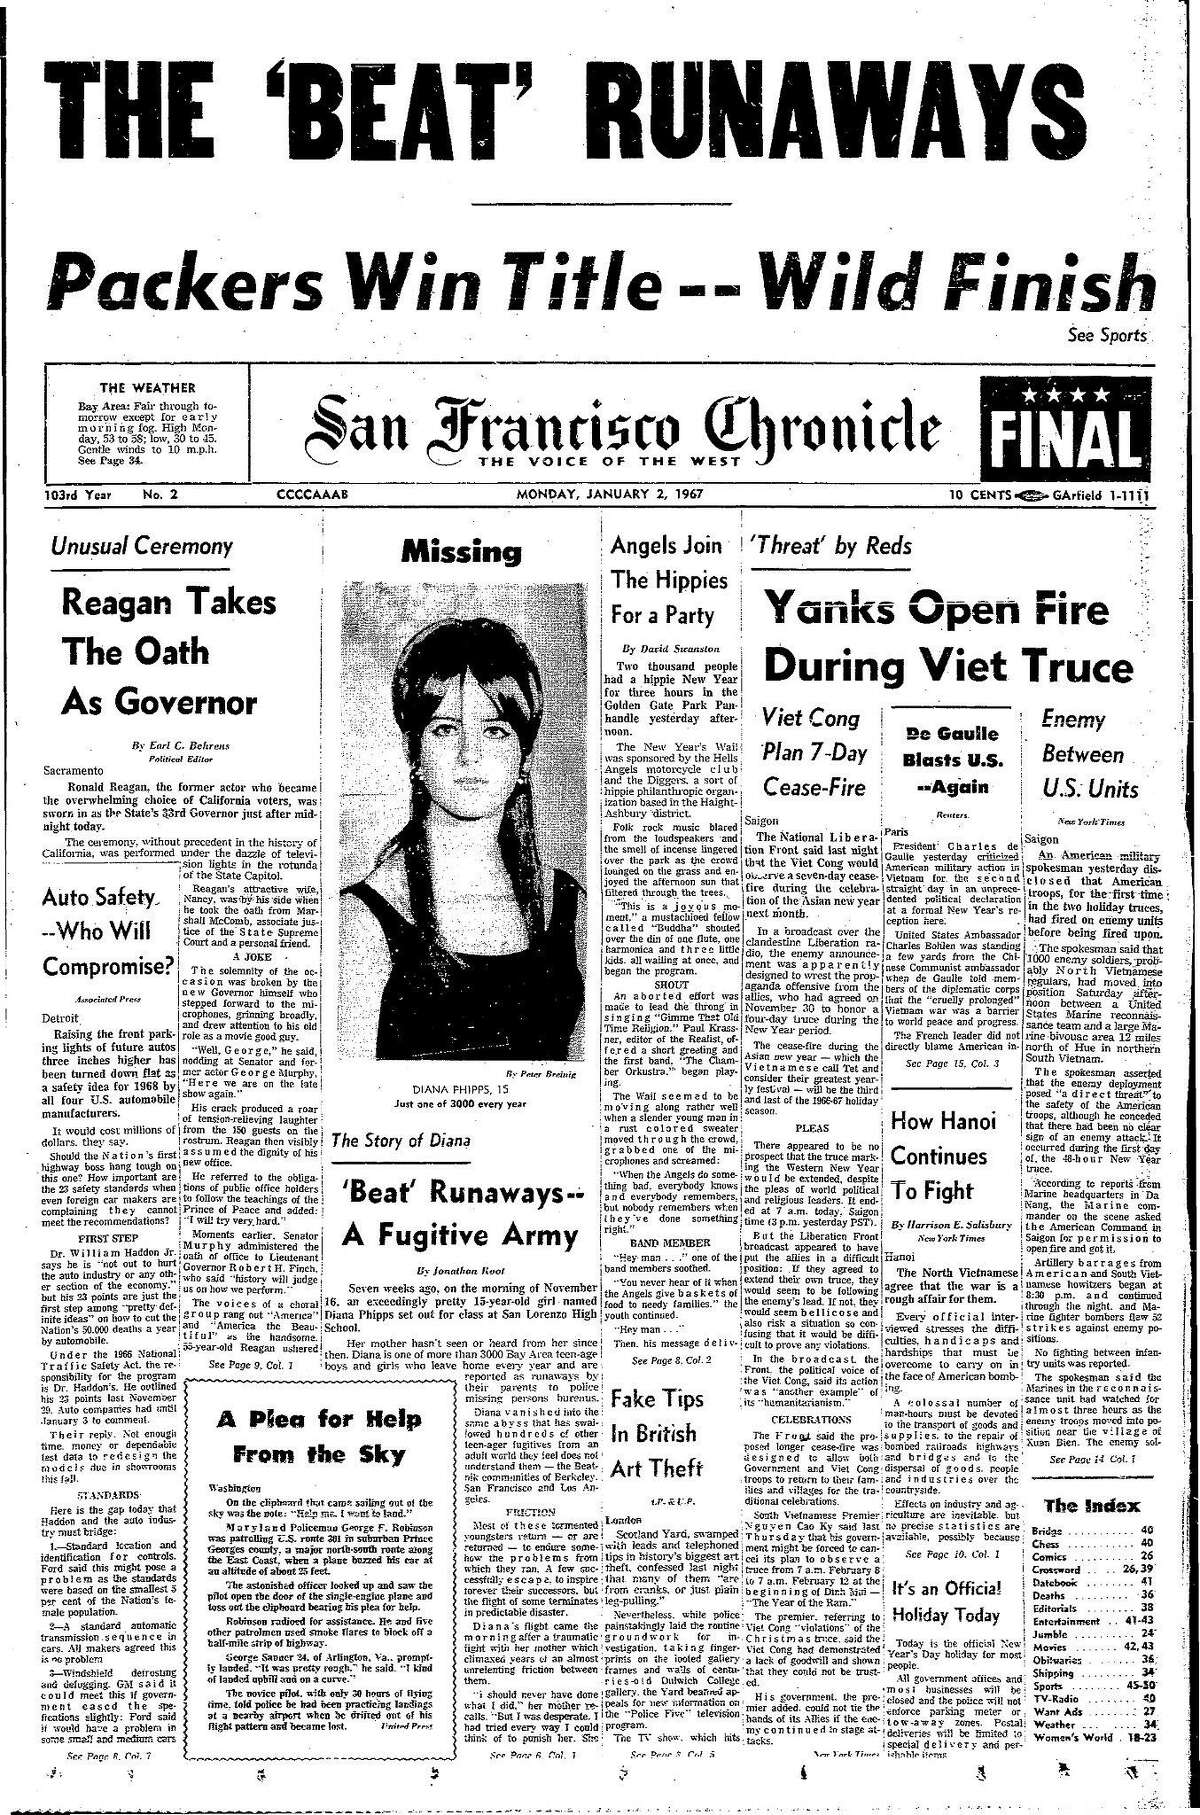 历史纪事第一版1967年1月2日旧金山处理离家出走的人涌向城市。罗纳德·里根就任州长，地狱天使和嬉皮在狭长地带Chron365, Chroncover一起参加新年派对